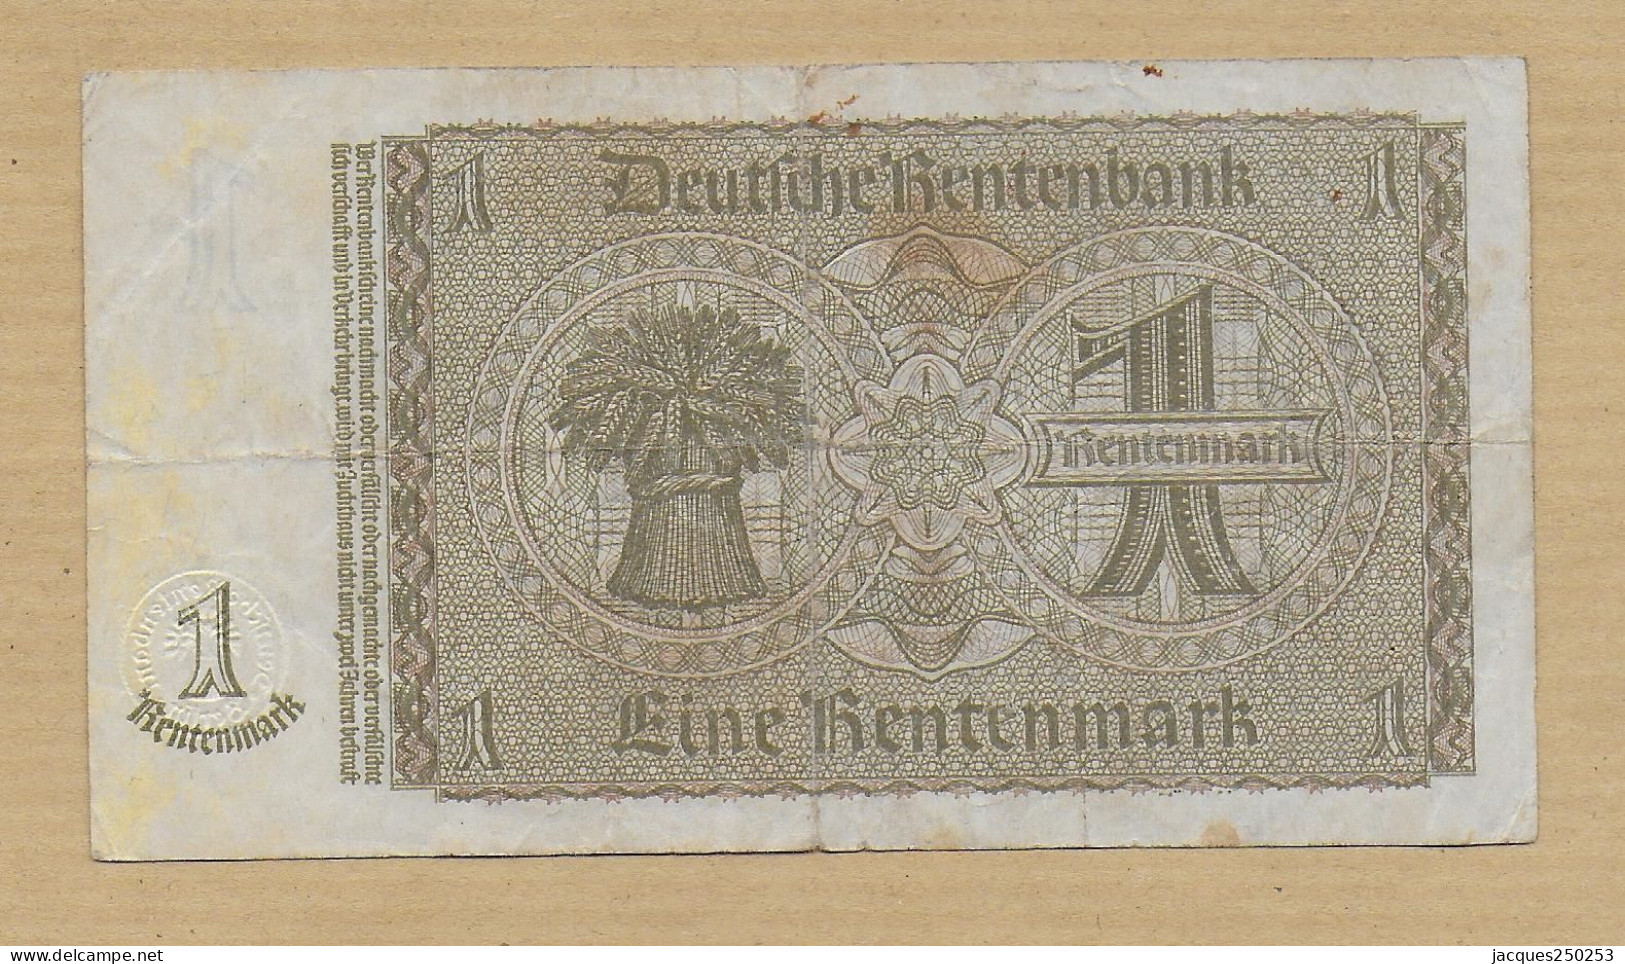 1 RENTENMARK 30-01-1937 - Sammlungen